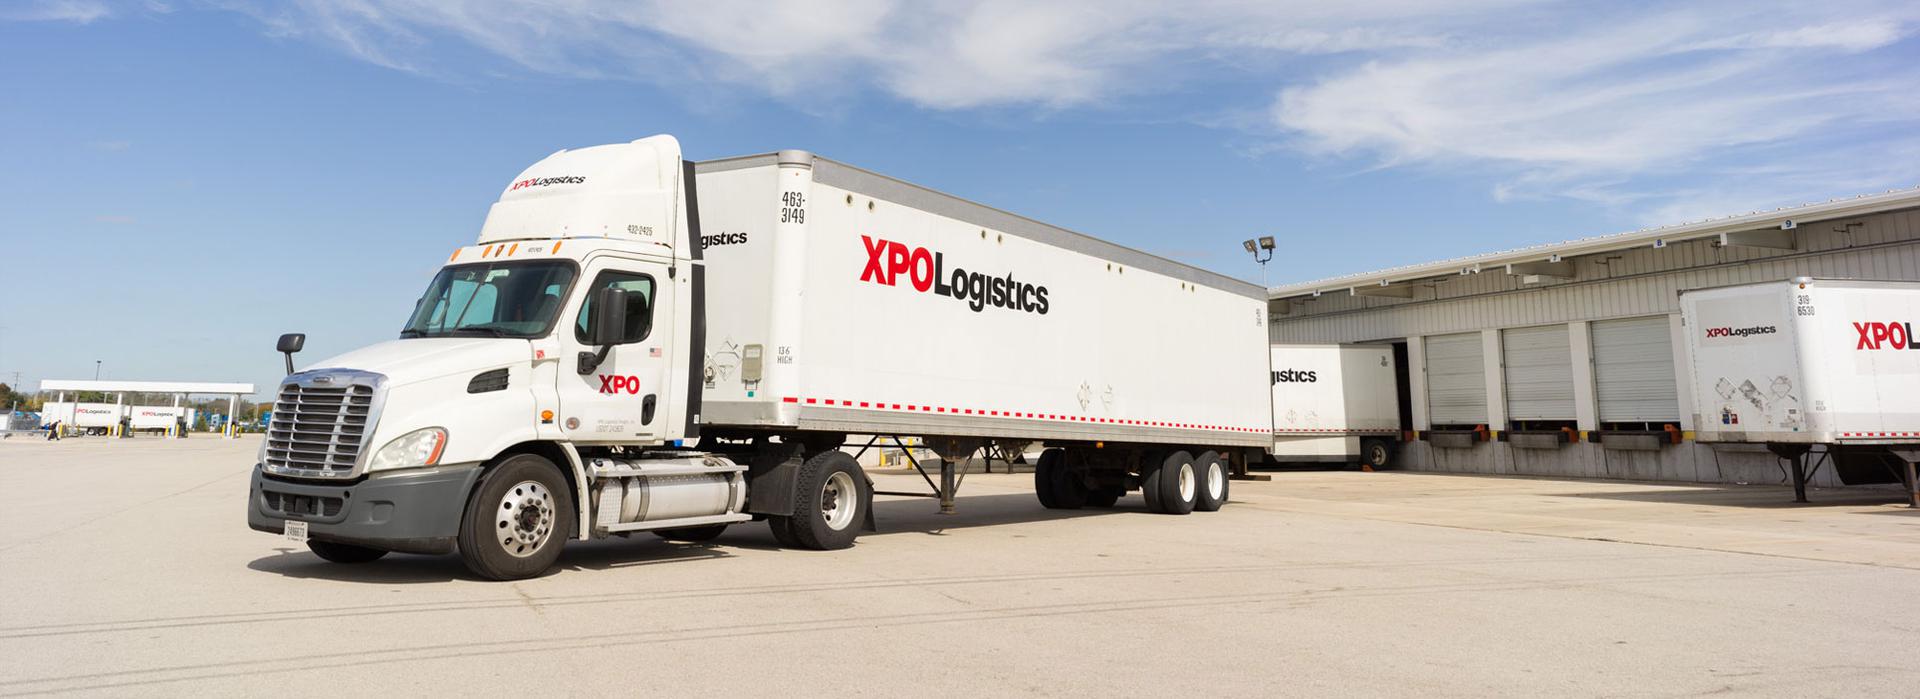 xpo logistics pickup